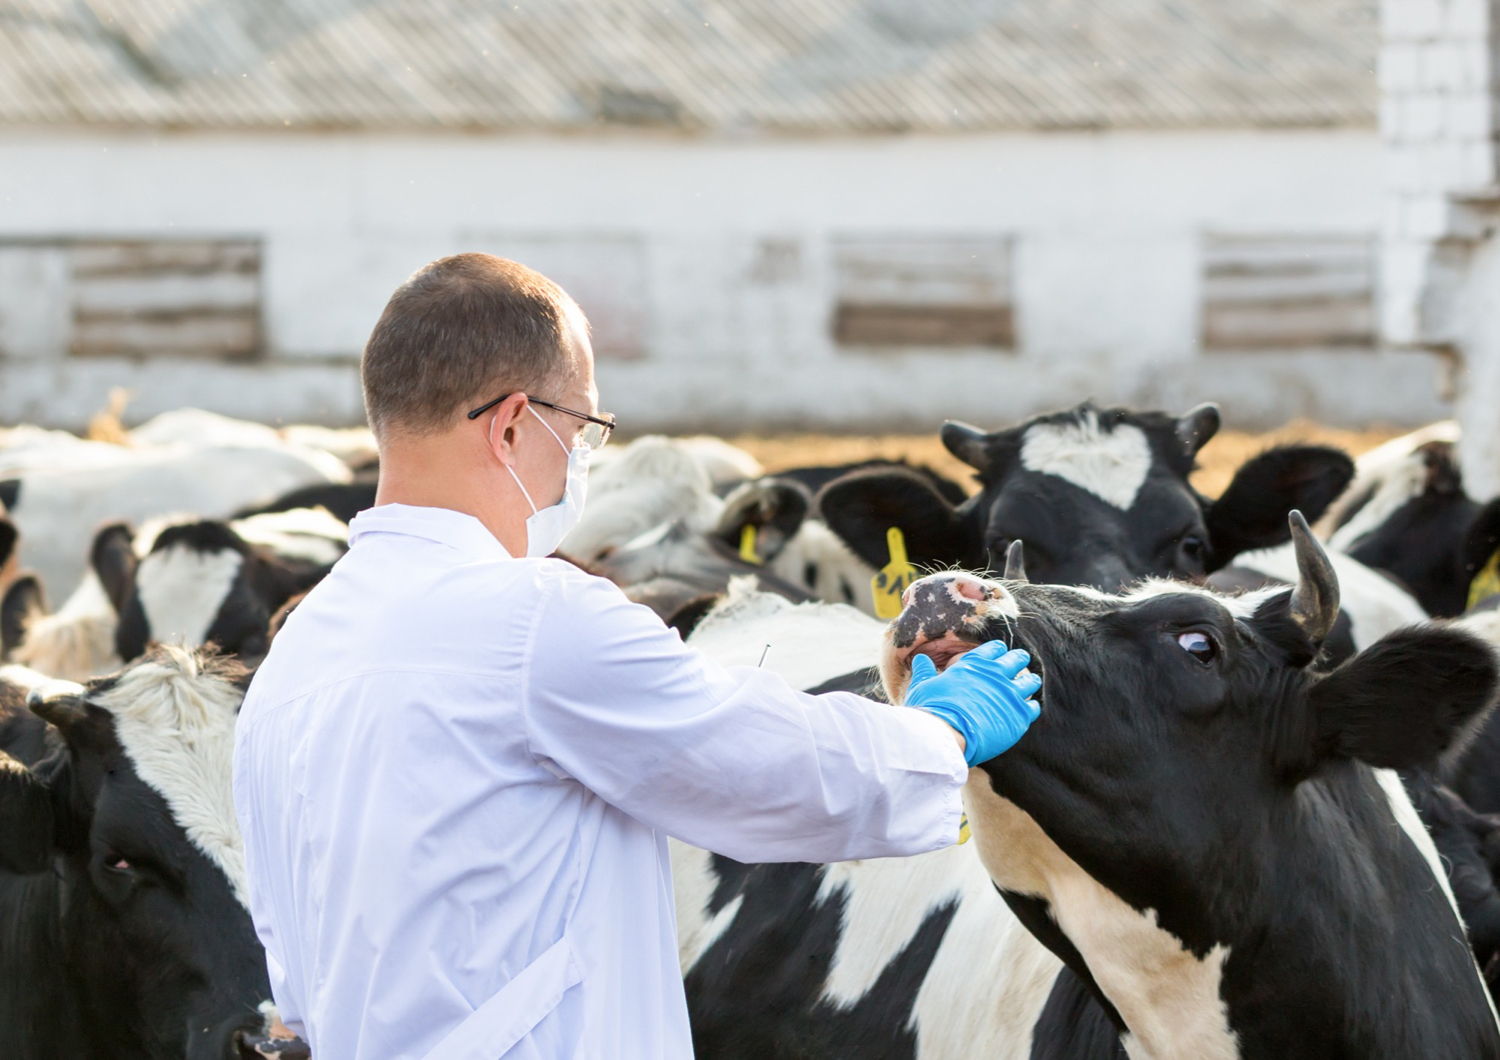 AXON COMUNICACION, Enfermedad respiratoria bovina en la granja: mirando más allá del tratamiento de terneros enfermos